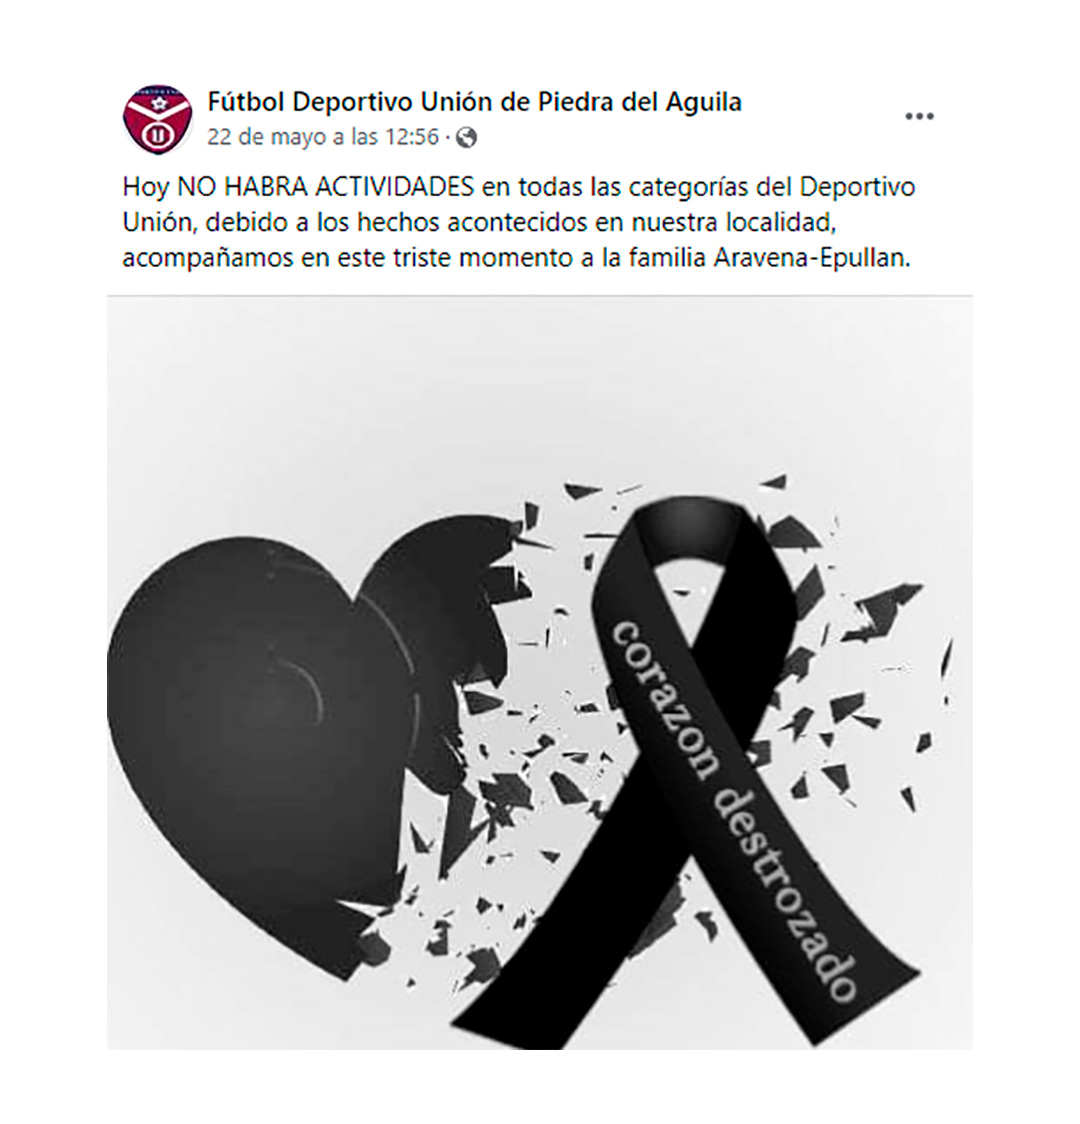 El club Fútbol Deportivo Unión de Piedra del Águila suspendió sus actividades por el hecho